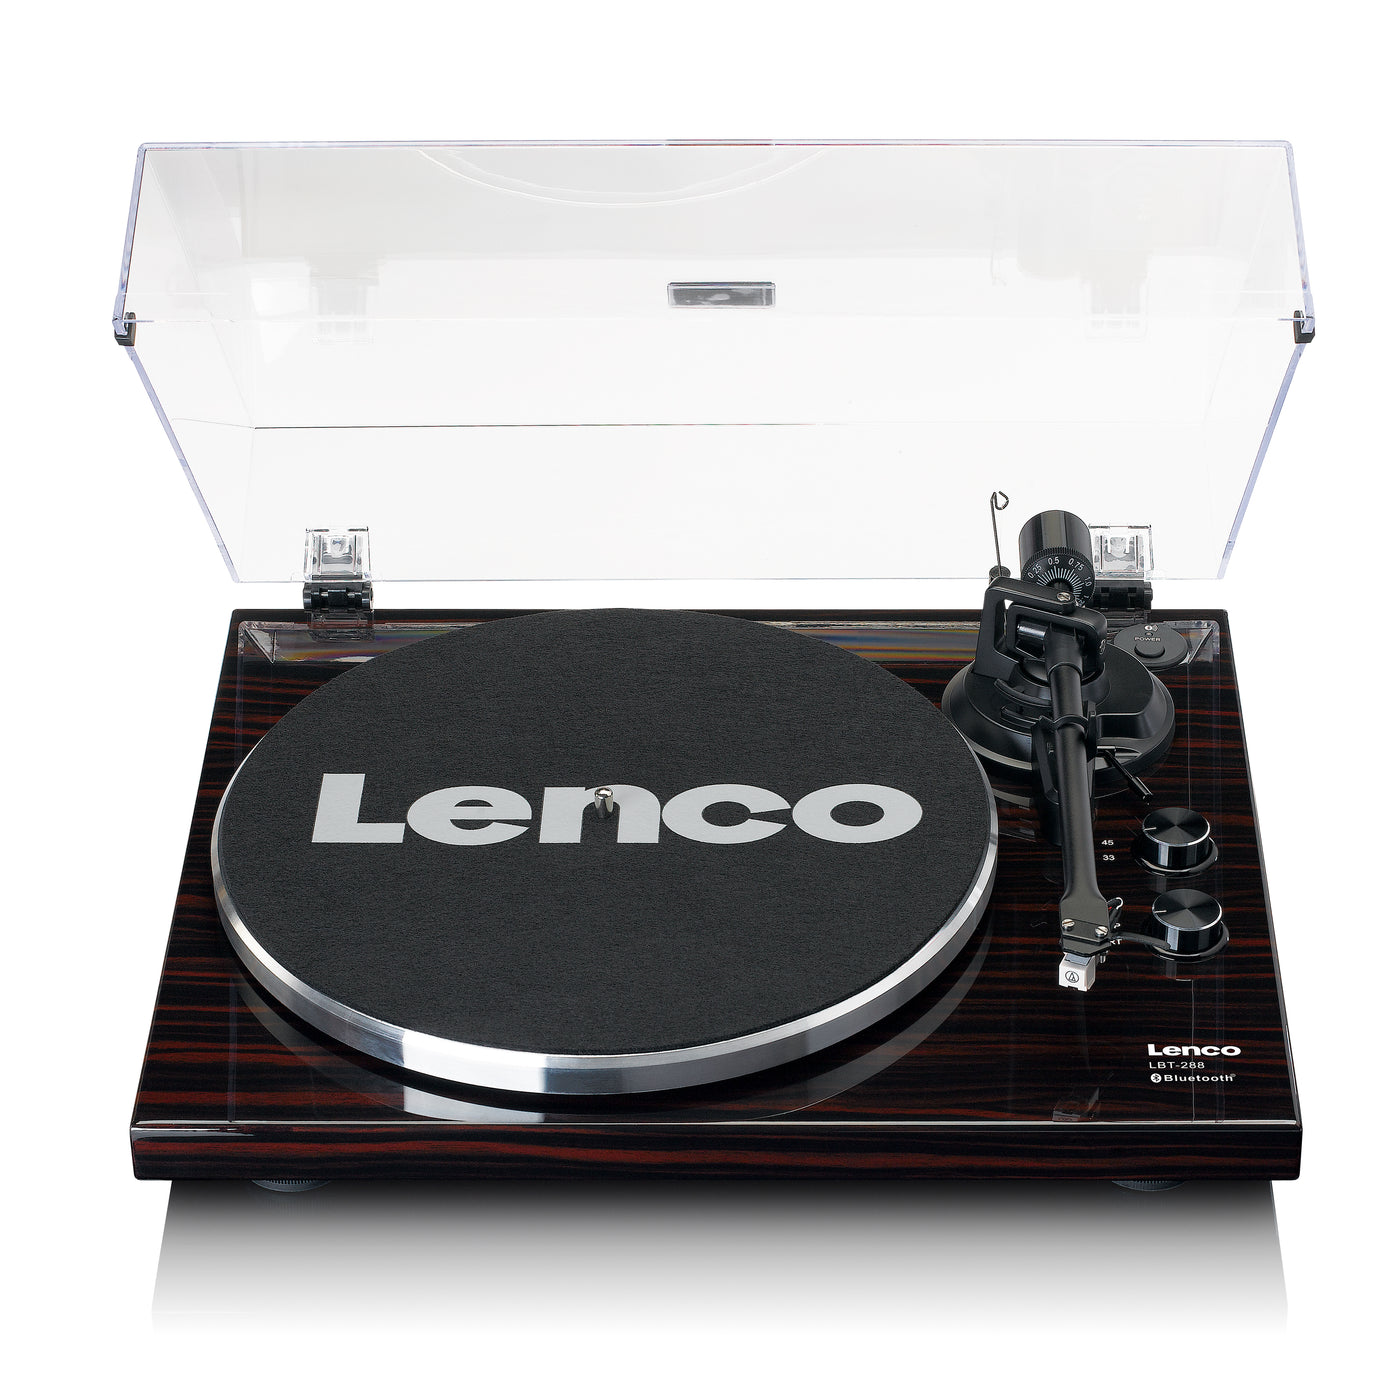 LENCO LBT-288WA - Gramofon z transmisją Bluetooth®, kolor ciemnobrązowy